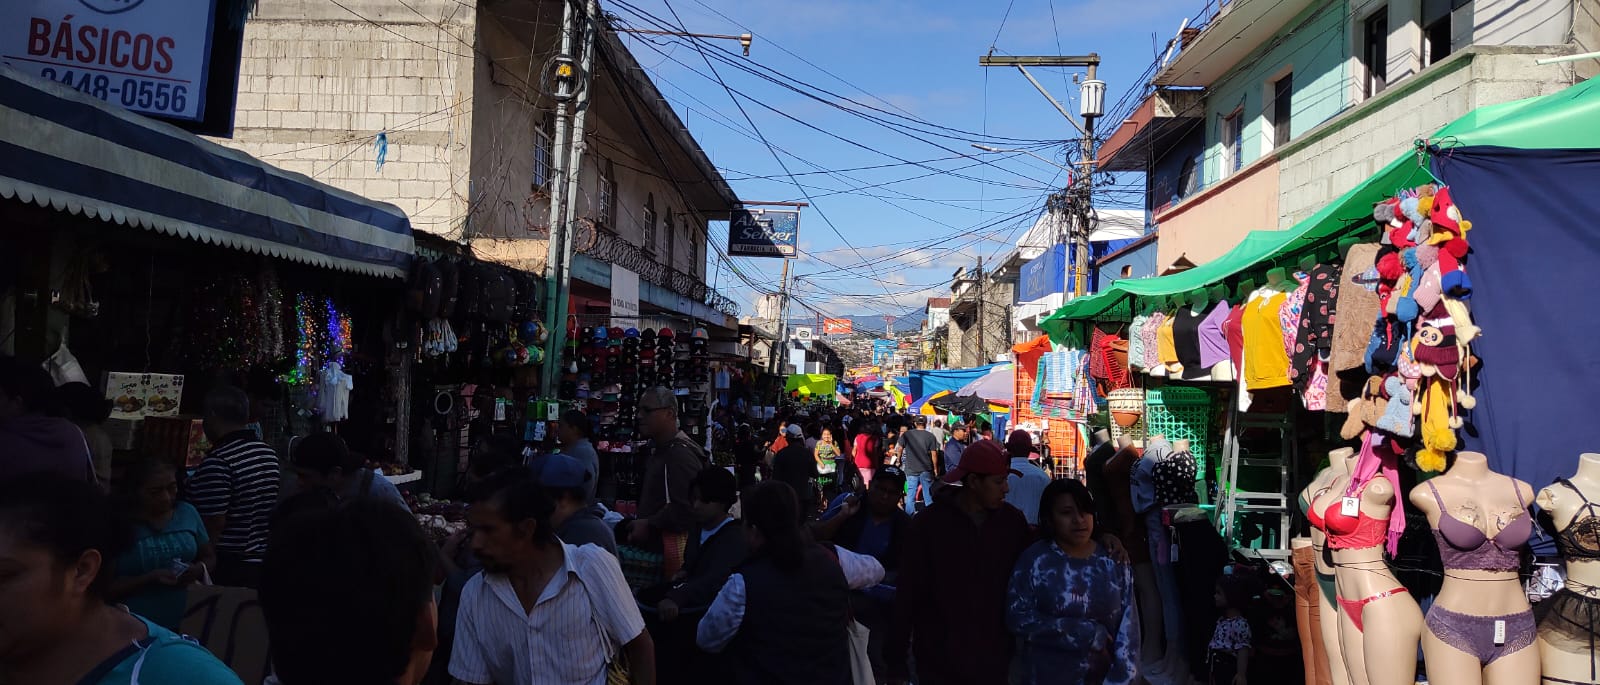 Guatemaltecos hacen compras en mercados previo a la navidad. Fotografía: Prensa LIBRE (Edwin Pitan).